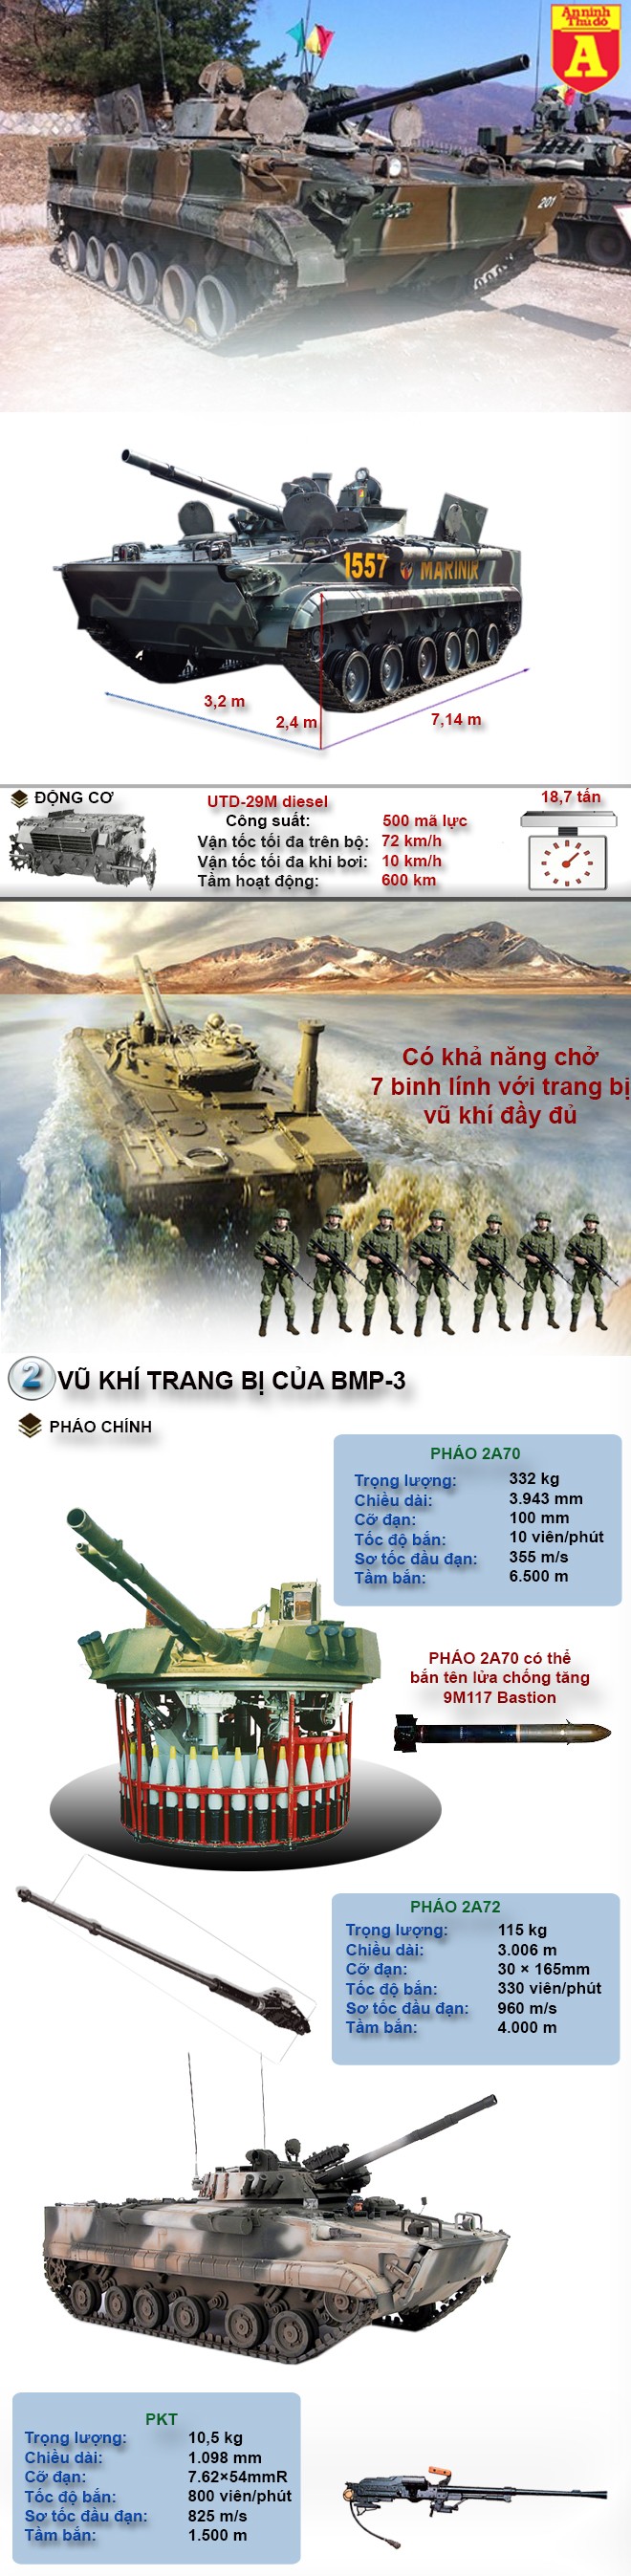 [Infographic] Sức mạnh xe bọc thép Nga trong quân đội Hàn Quốc sẵn sàng đương đầu với Triều Tiên khi có xung đột ảnh 2